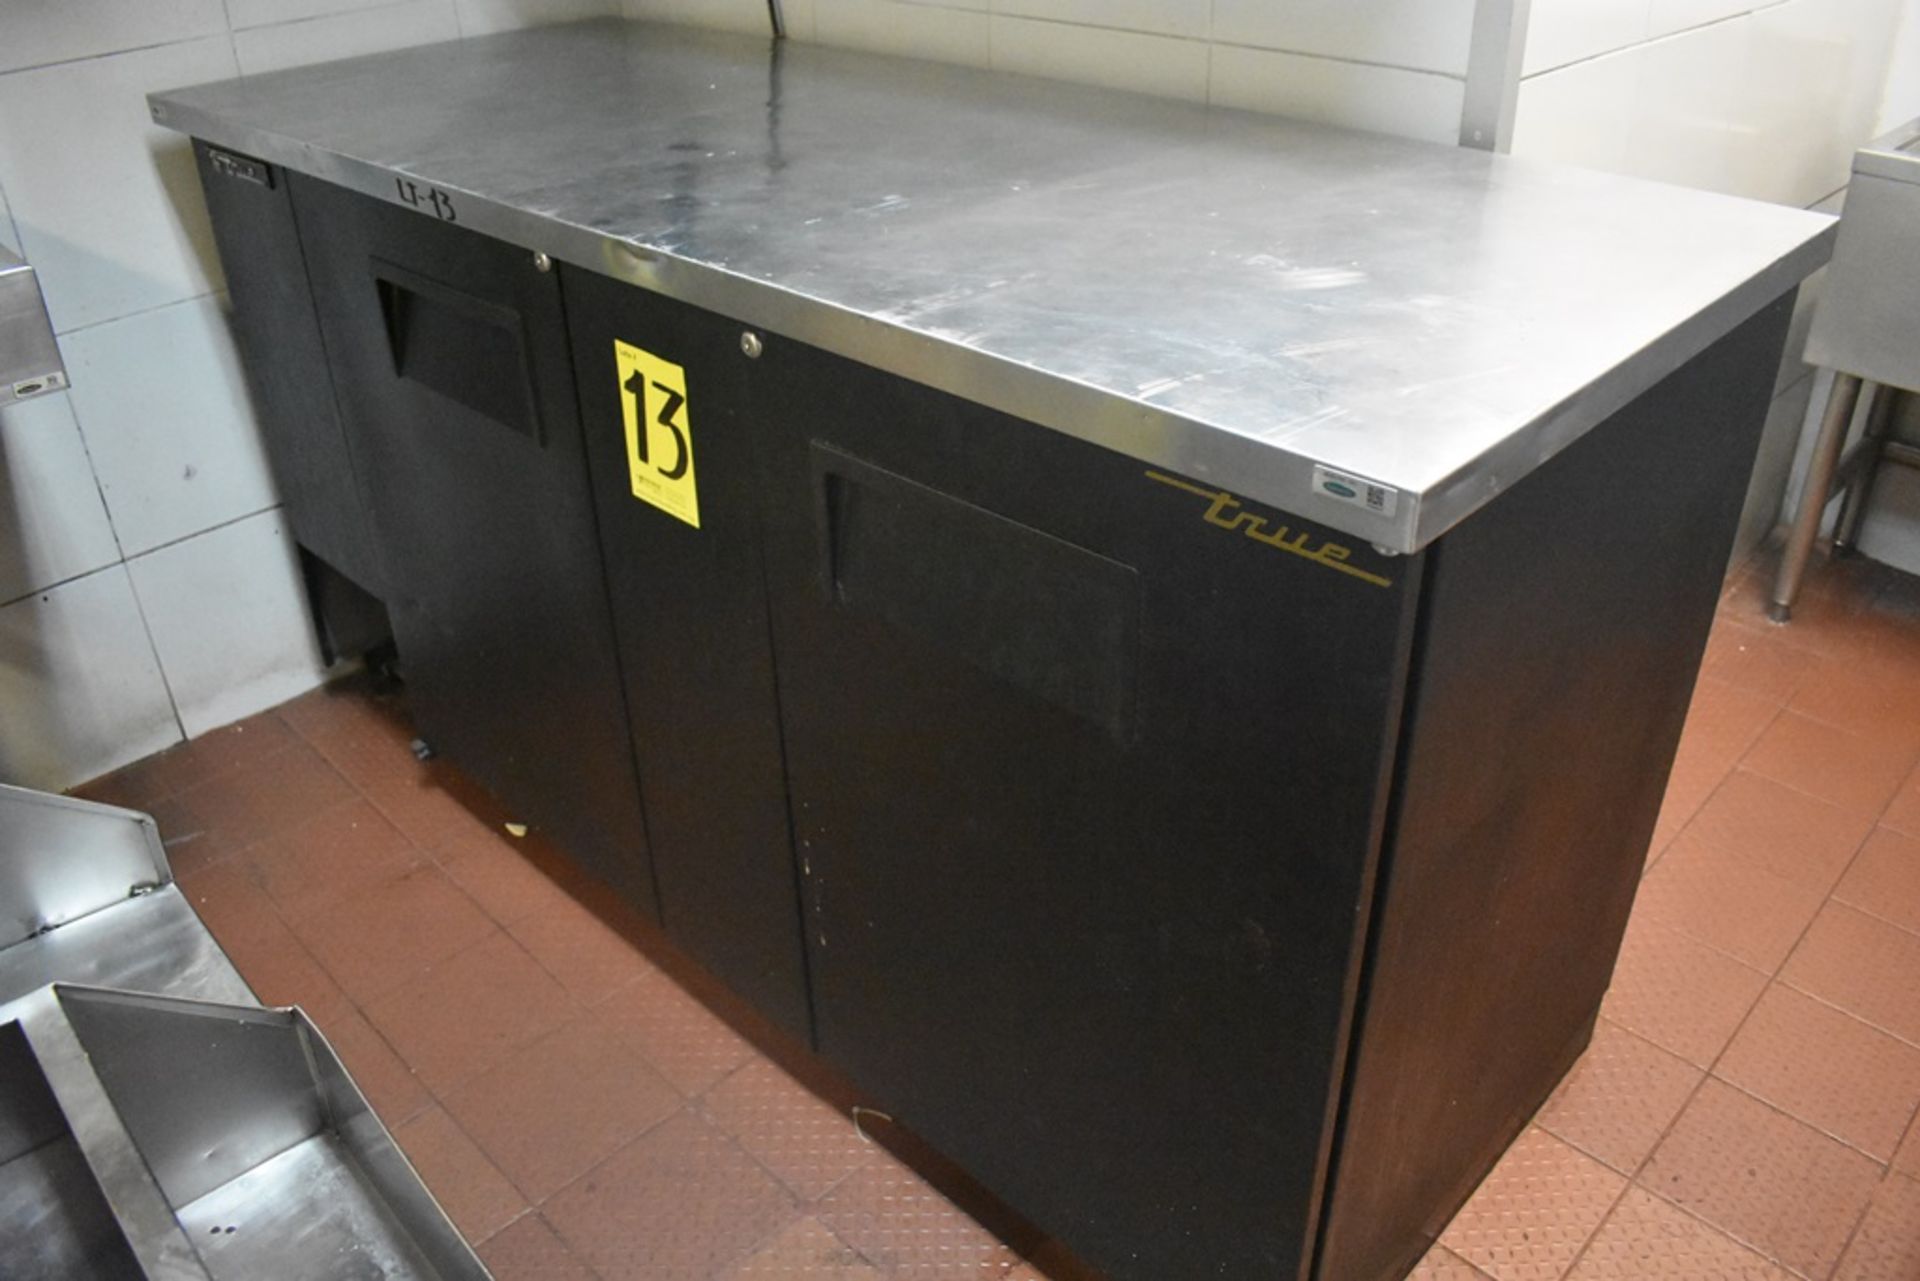 Mesa de trabajo refrigerada con cubierta en acero inoxidable marca True, modelo TBB-3, número de se - Image 2 of 20